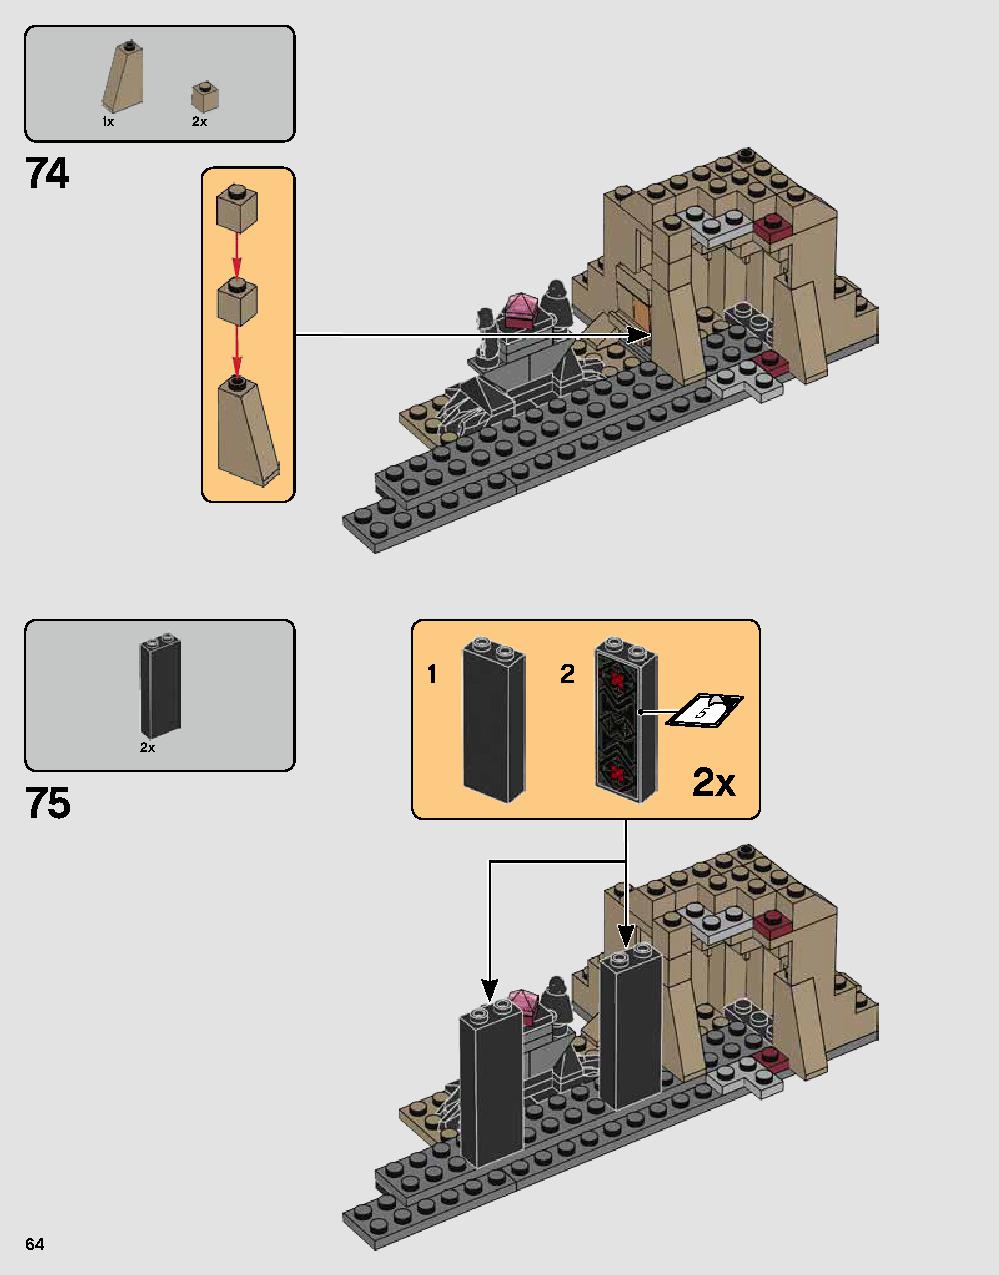 ダース・ベイダーの城 75251 レゴの商品情報 レゴの説明書・組立方法 64 page